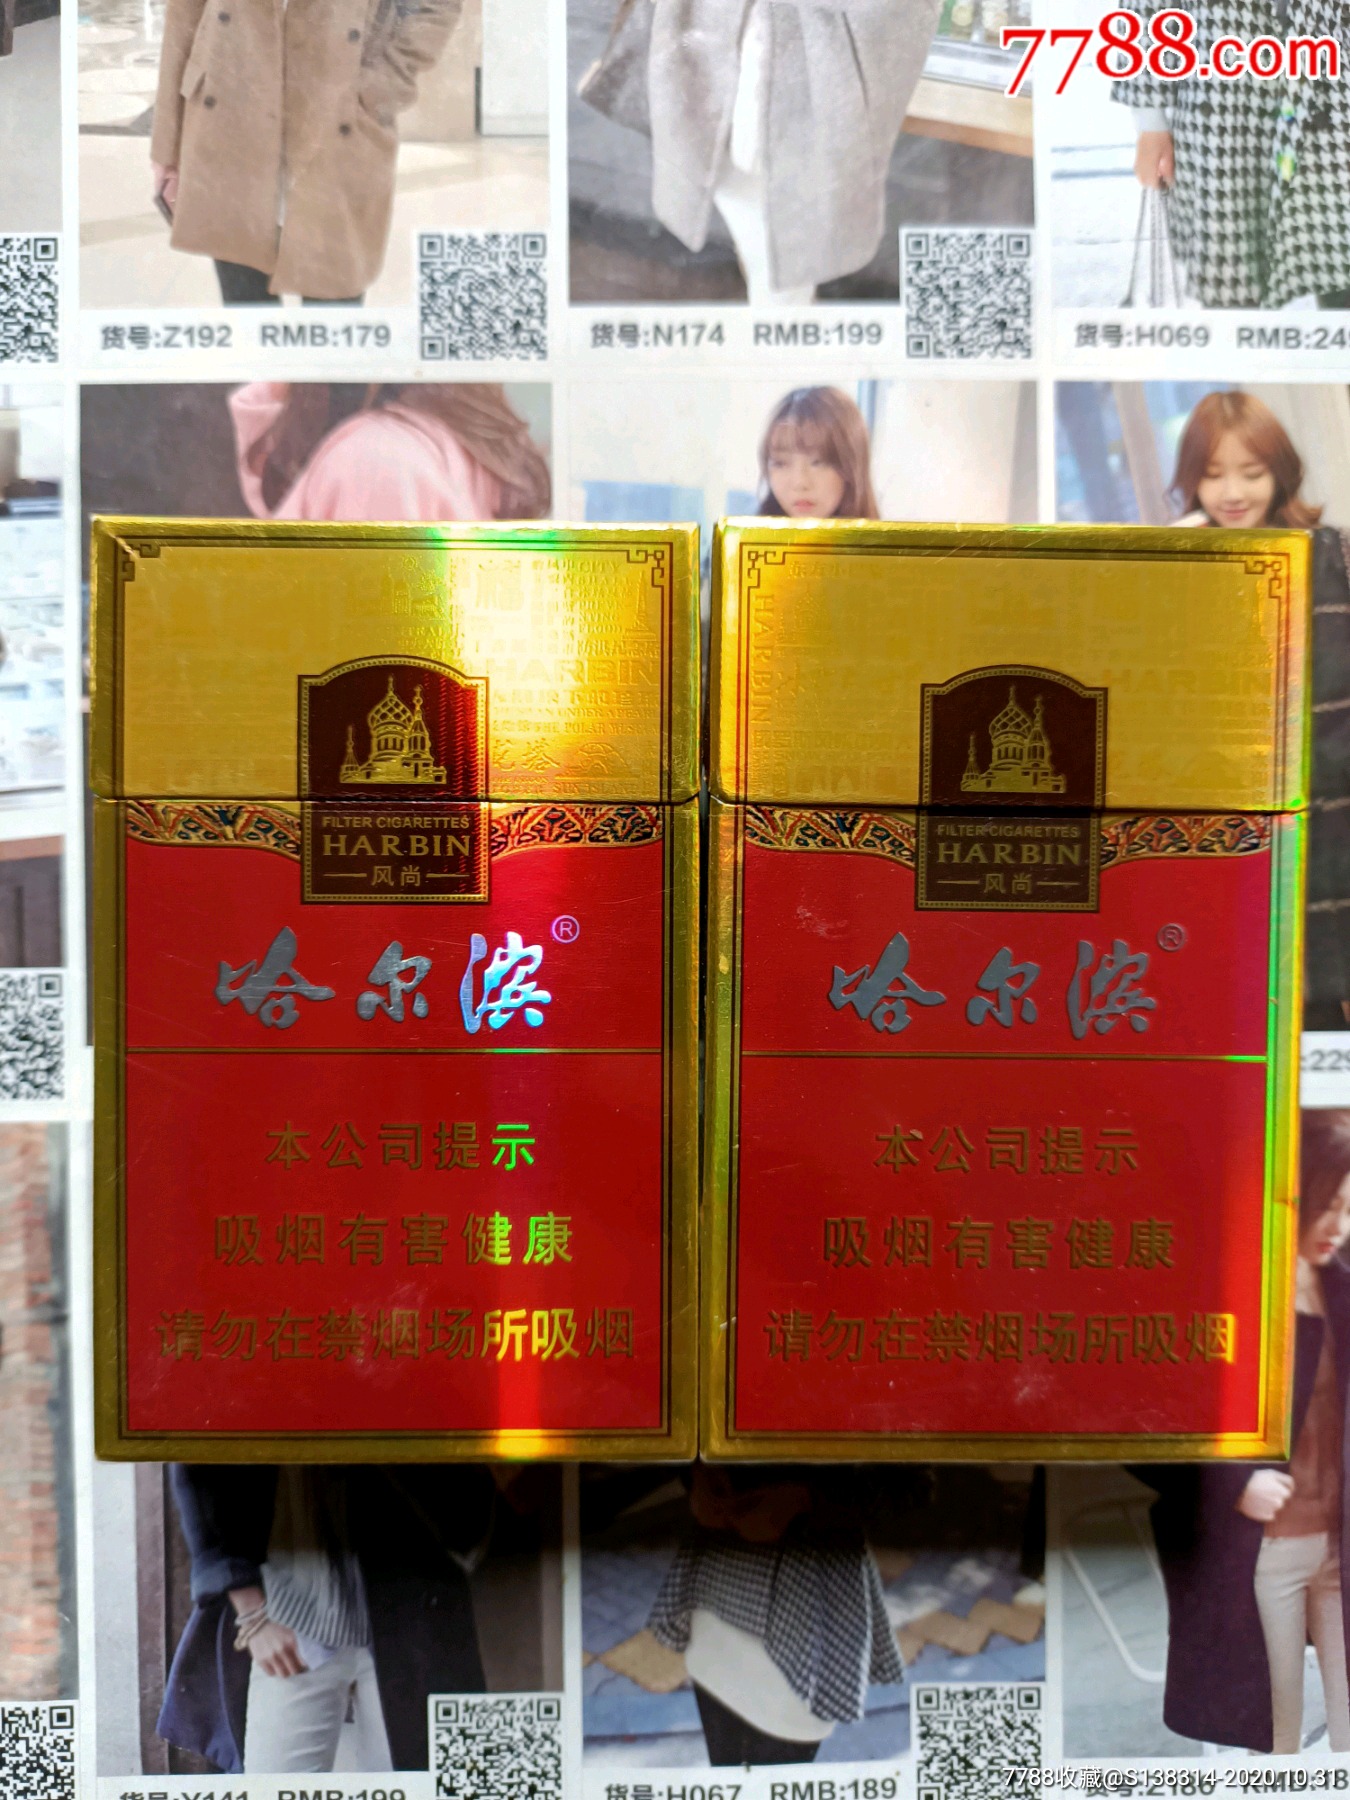 哈尔滨风尚香烟多少钱图片